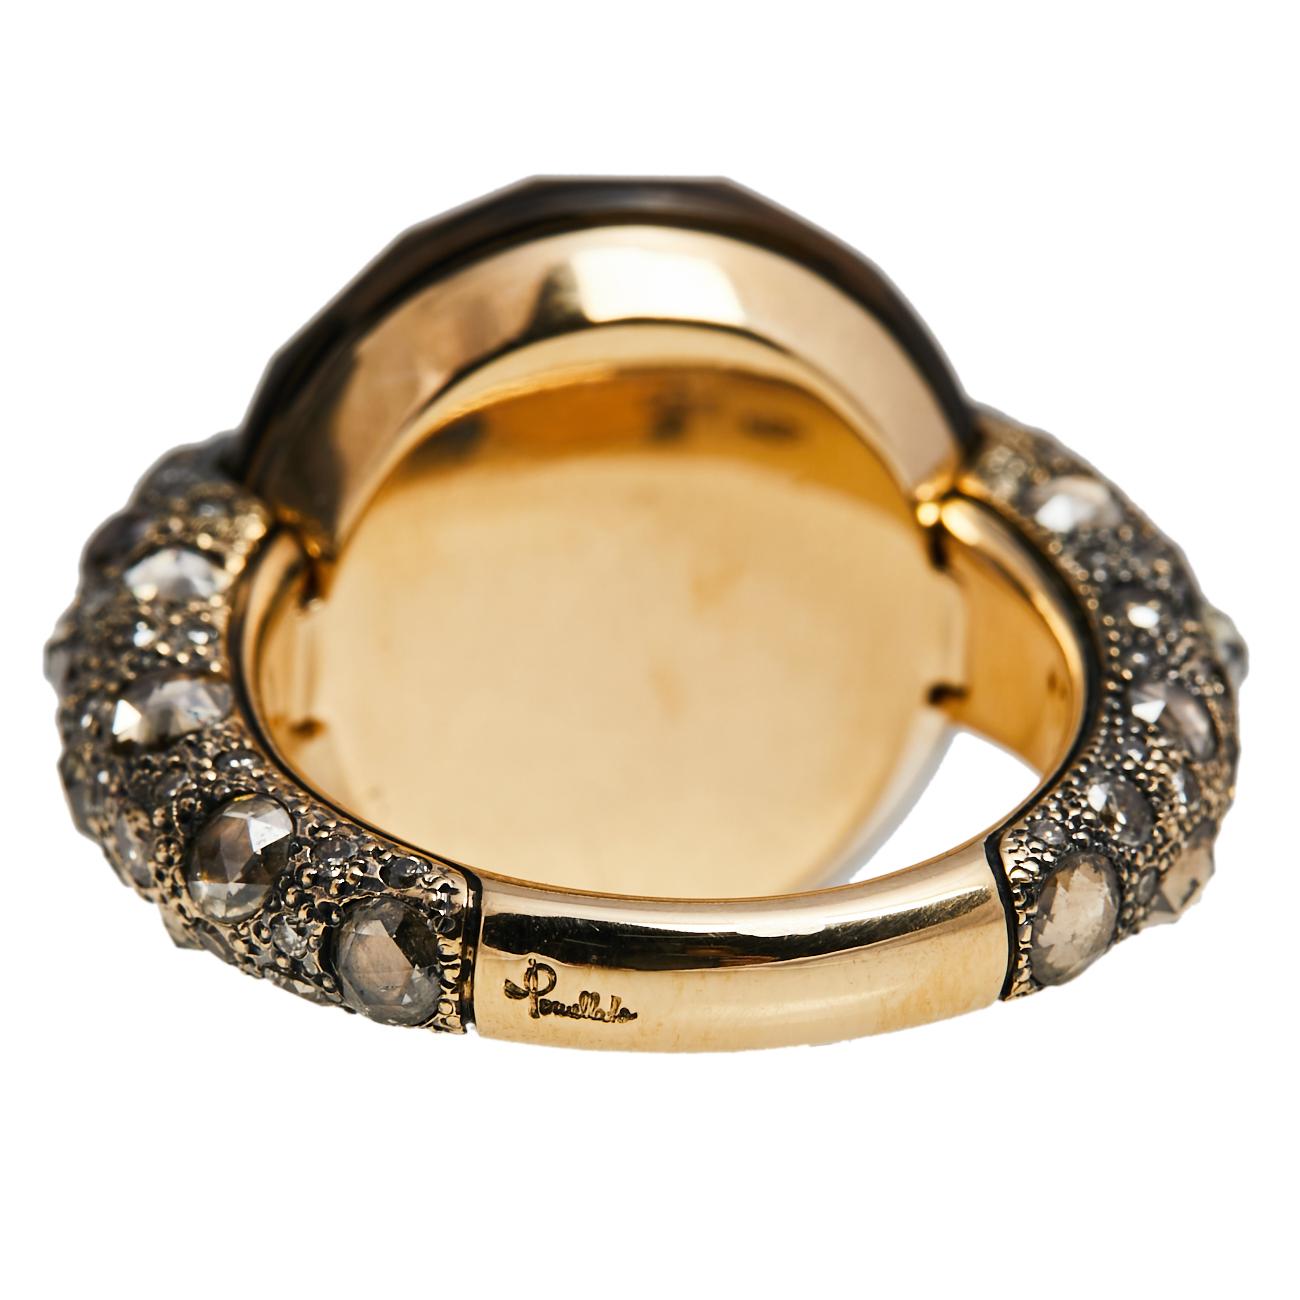 Pomellato Tango Smoky Quartz Diamond 18K Rose Gold Cocktail Ring Size 52.5 In Fair Condition In Dubai, Al Qouz 2